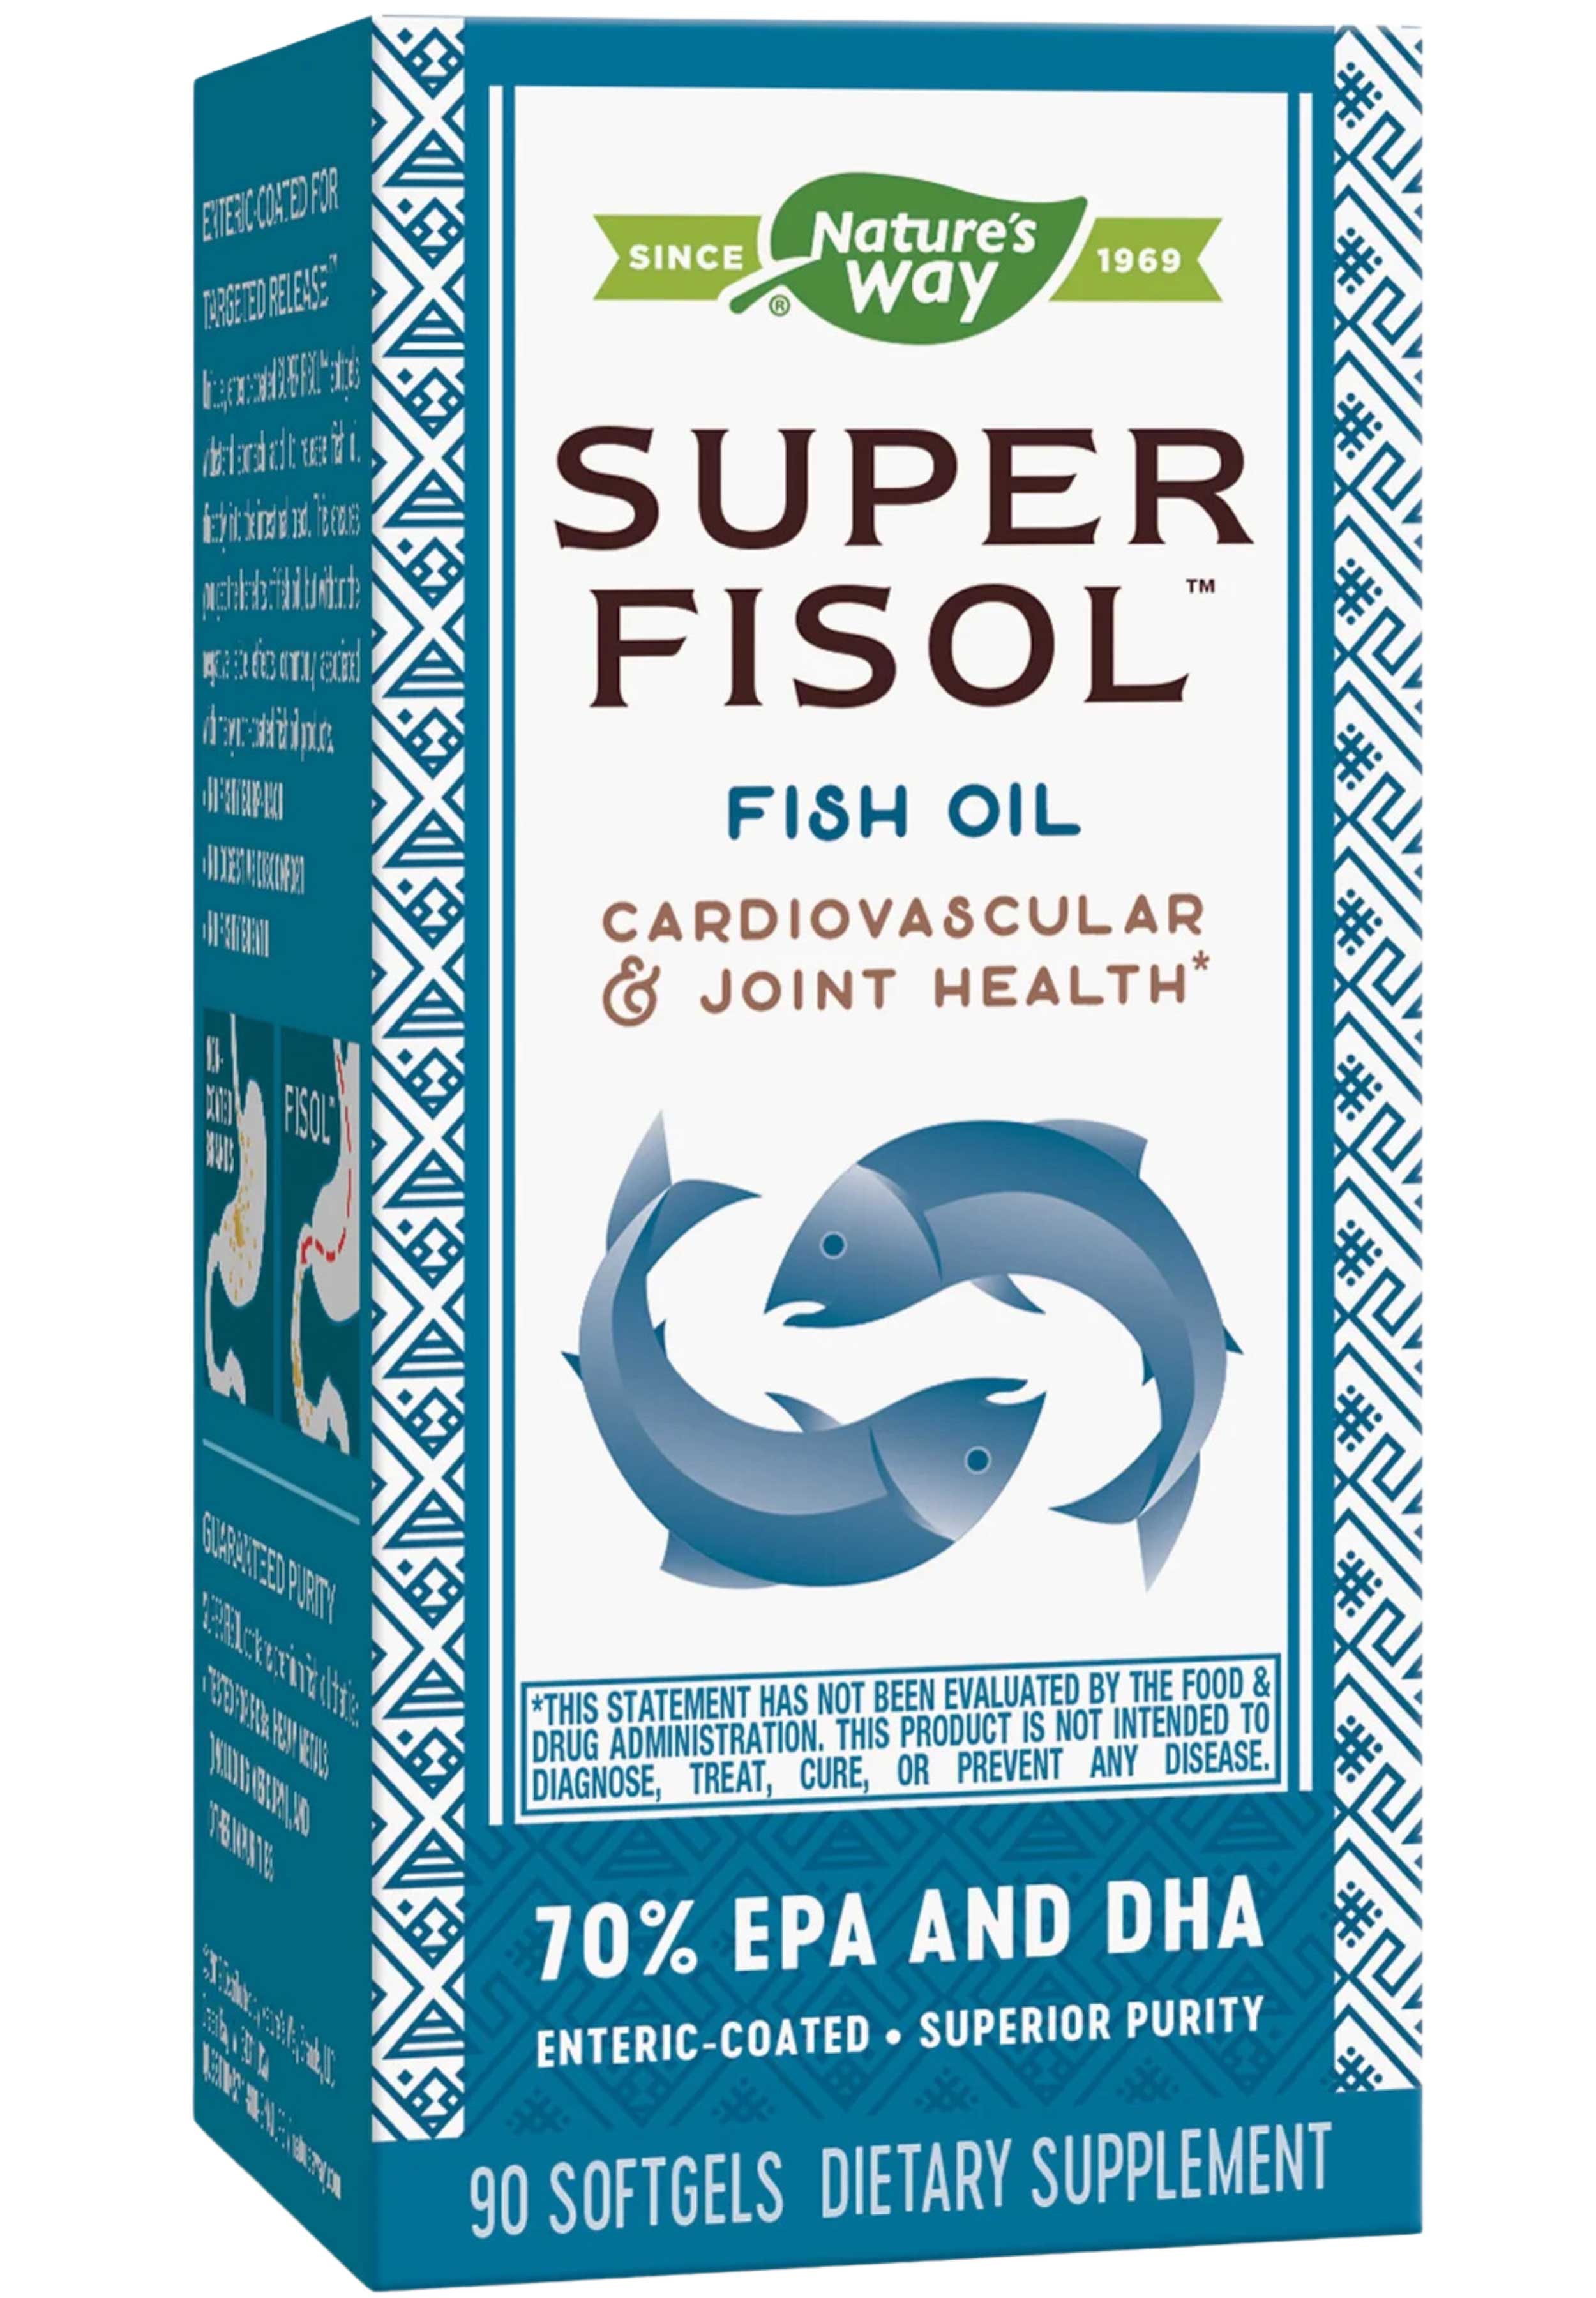 Nature's Way Super Fisol Fish Oil